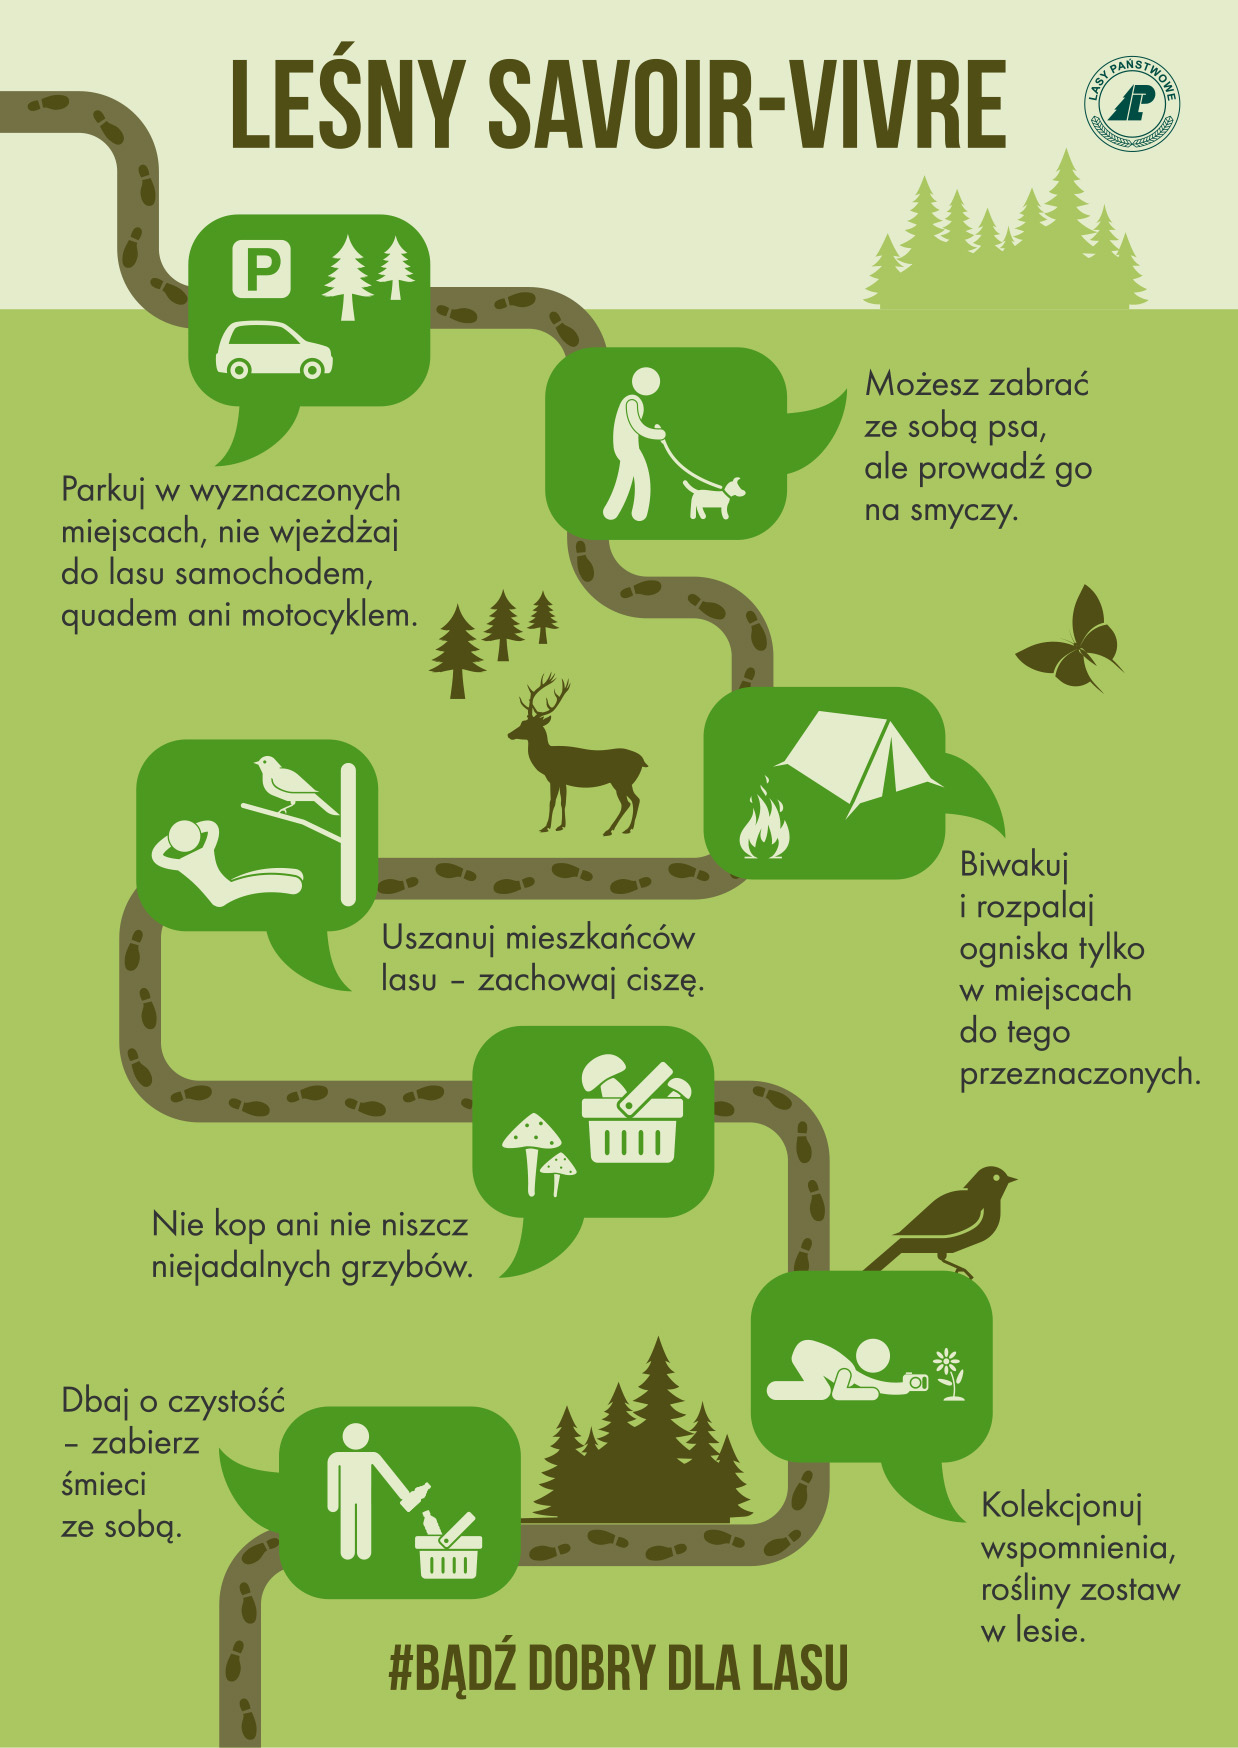 Infografika przedstawia zbiór zasad dobrego zachowania się w lesie. Źródło: CILP.